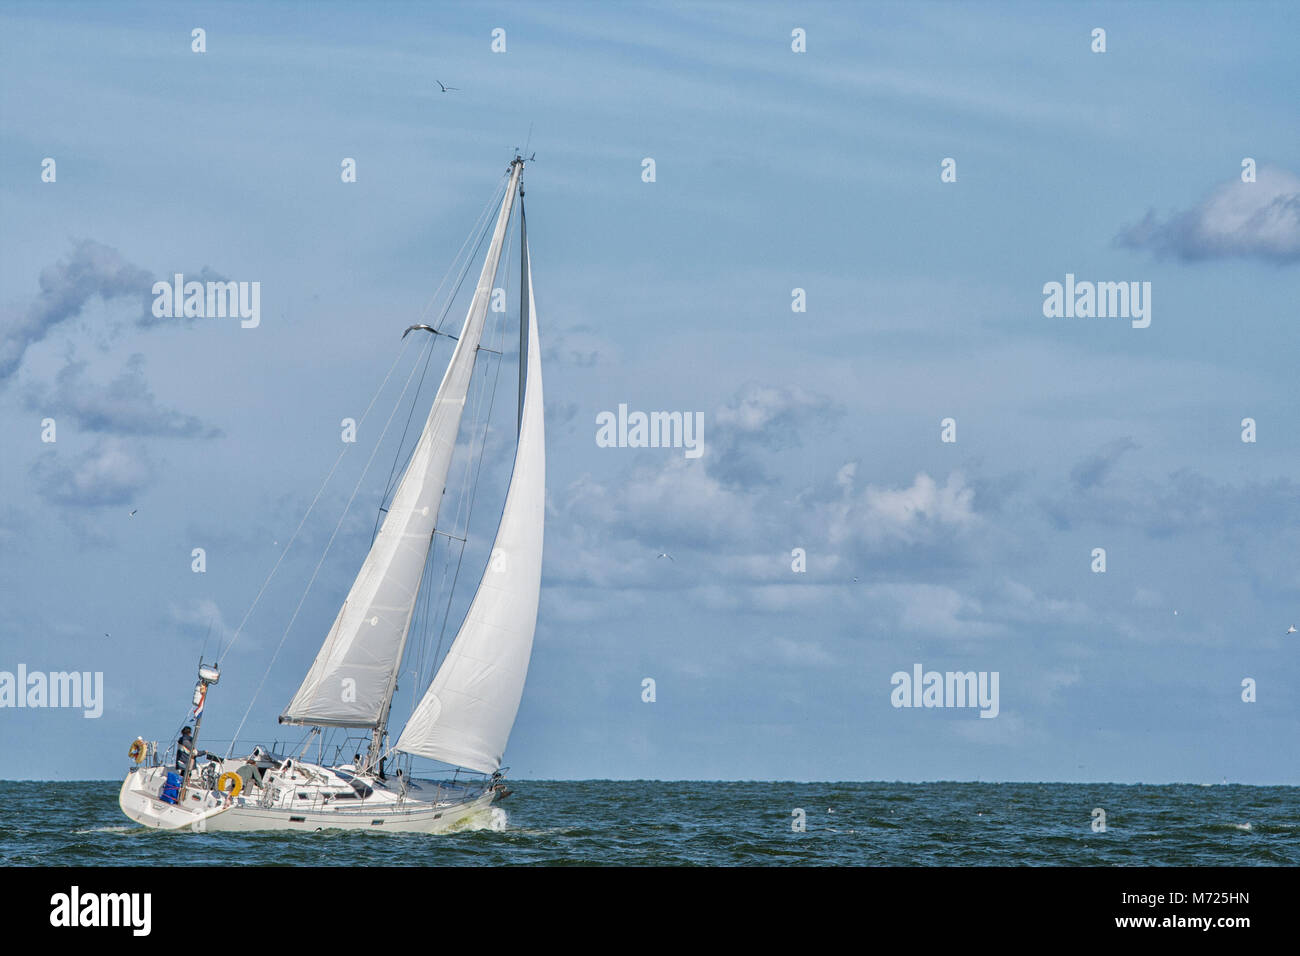 Niederlande - Aug 2, 2008: Holländische Segelschiff mit Solo saileron den Ozean Stockfoto